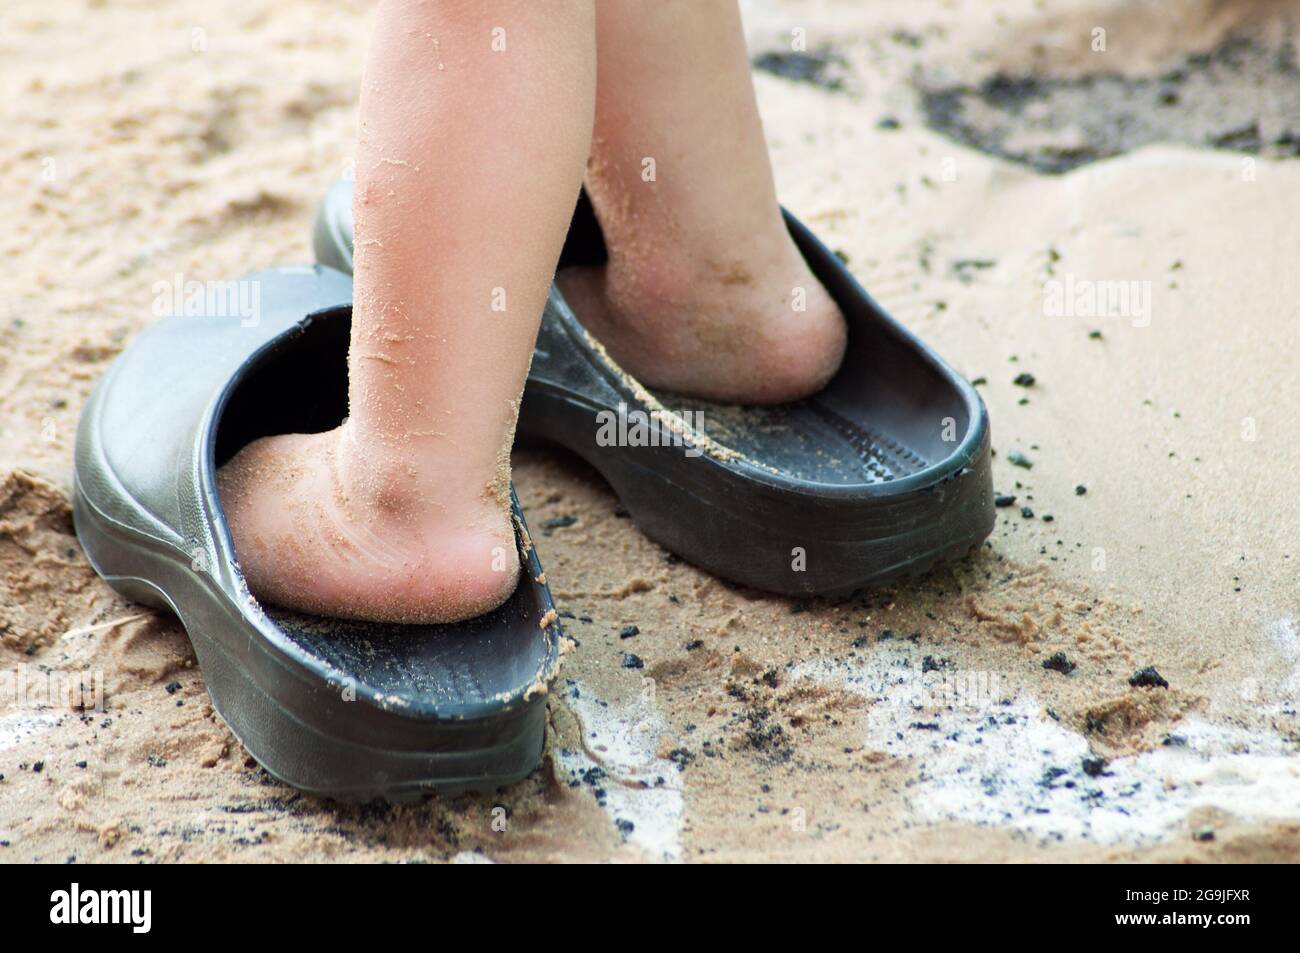 pies del niño en sandalias grandes sobre arena húmeda Fotografía de stock -  Alamy